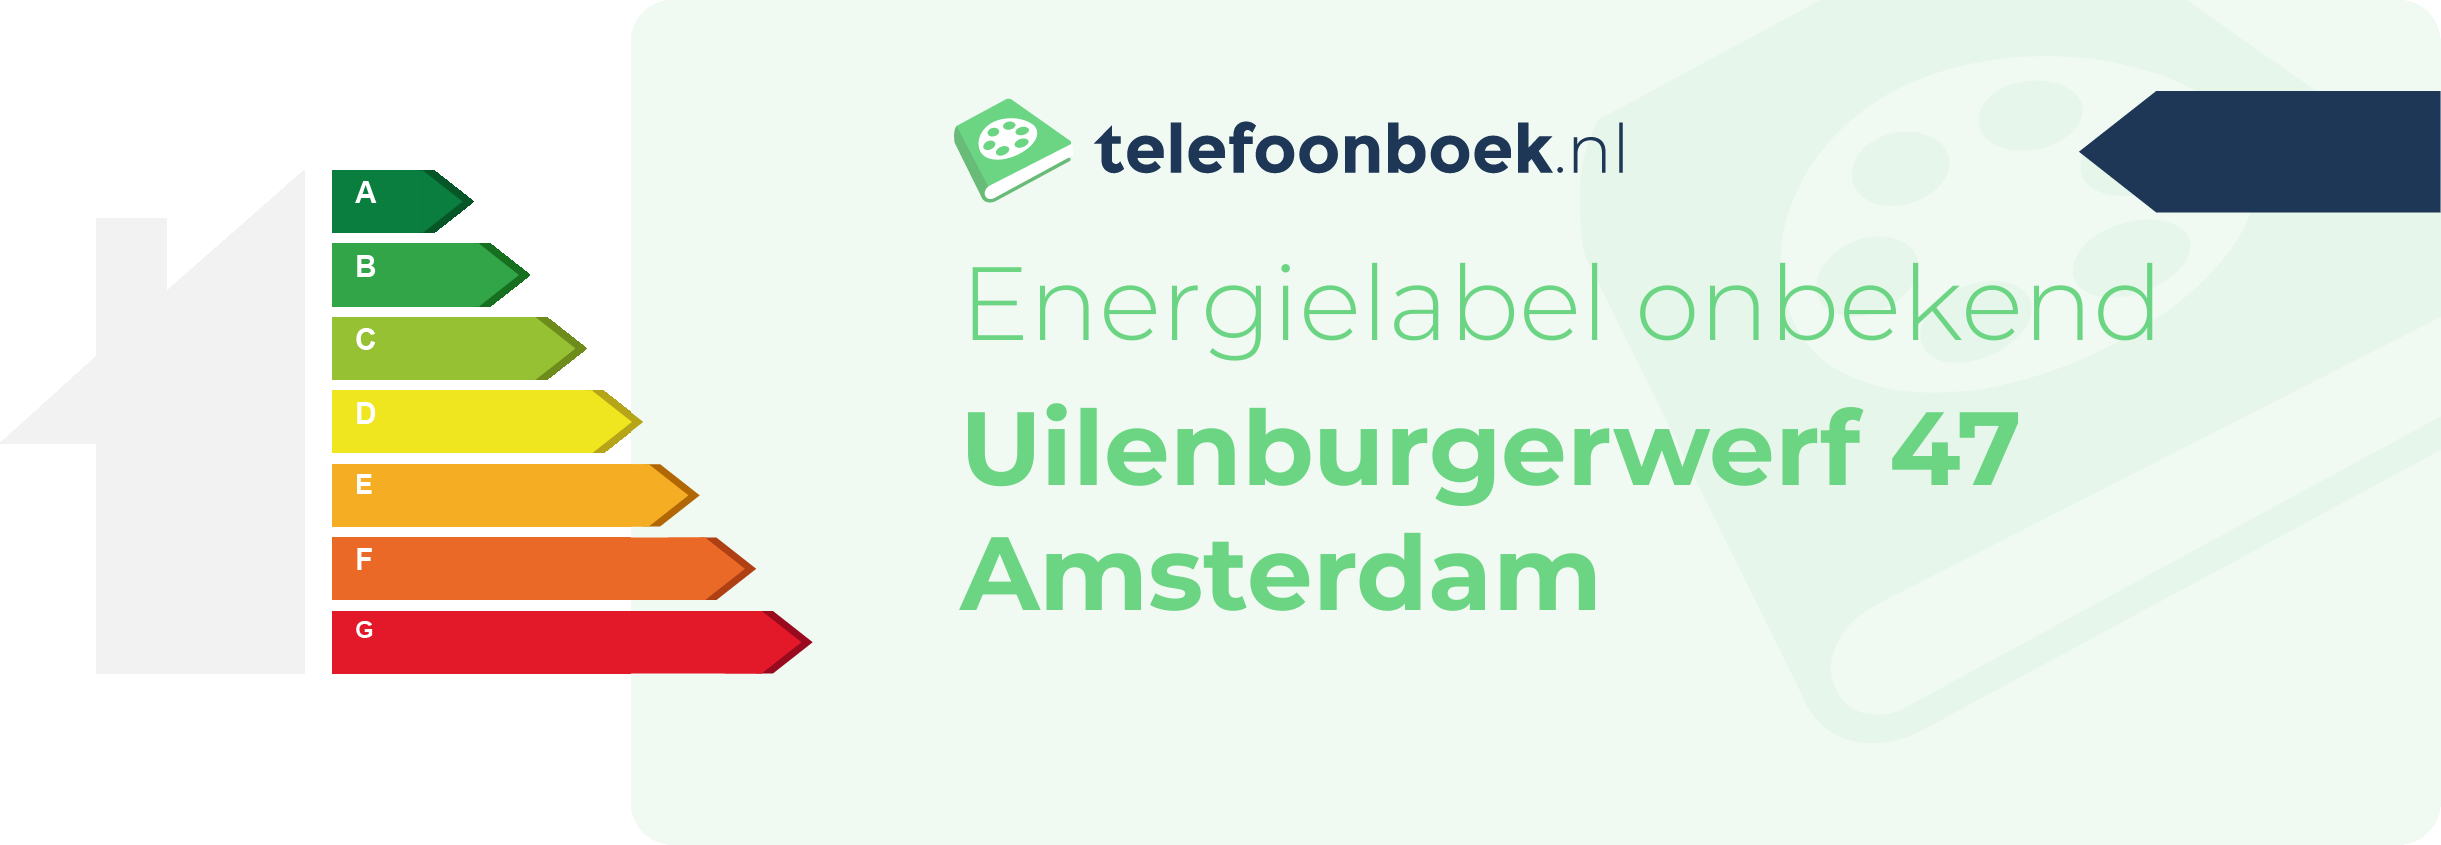 Energielabel Uilenburgerwerf 47 Amsterdam